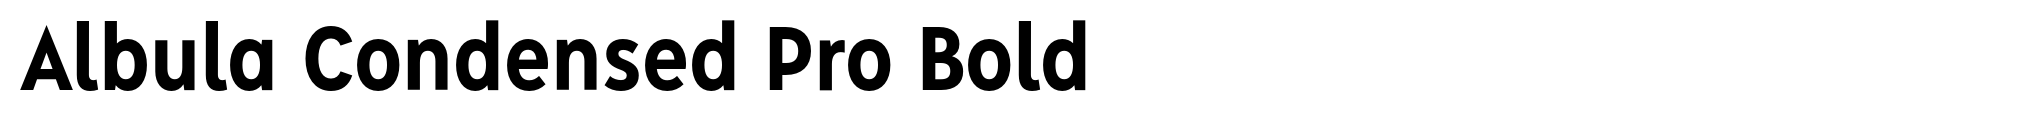 Albula Condensed Pro Bold image